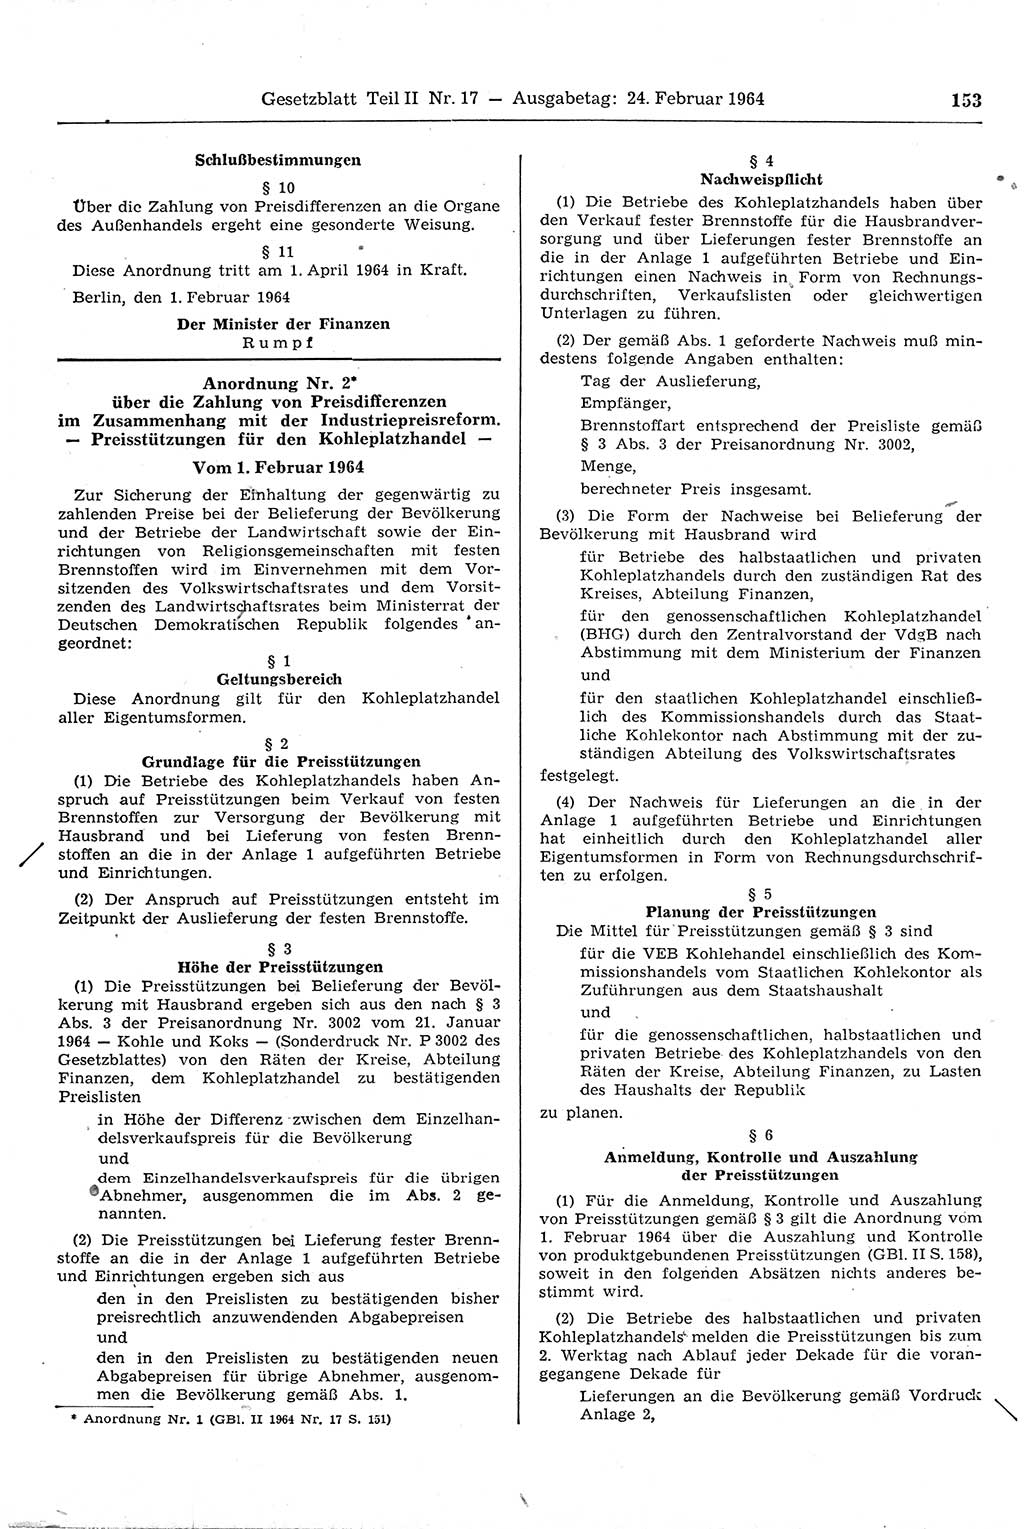 Gesetzblatt (GBl.) der Deutschen Demokratischen Republik (DDR) Teil ⅠⅠ 1964, Seite 153 (GBl. DDR ⅠⅠ 1964, S. 153)